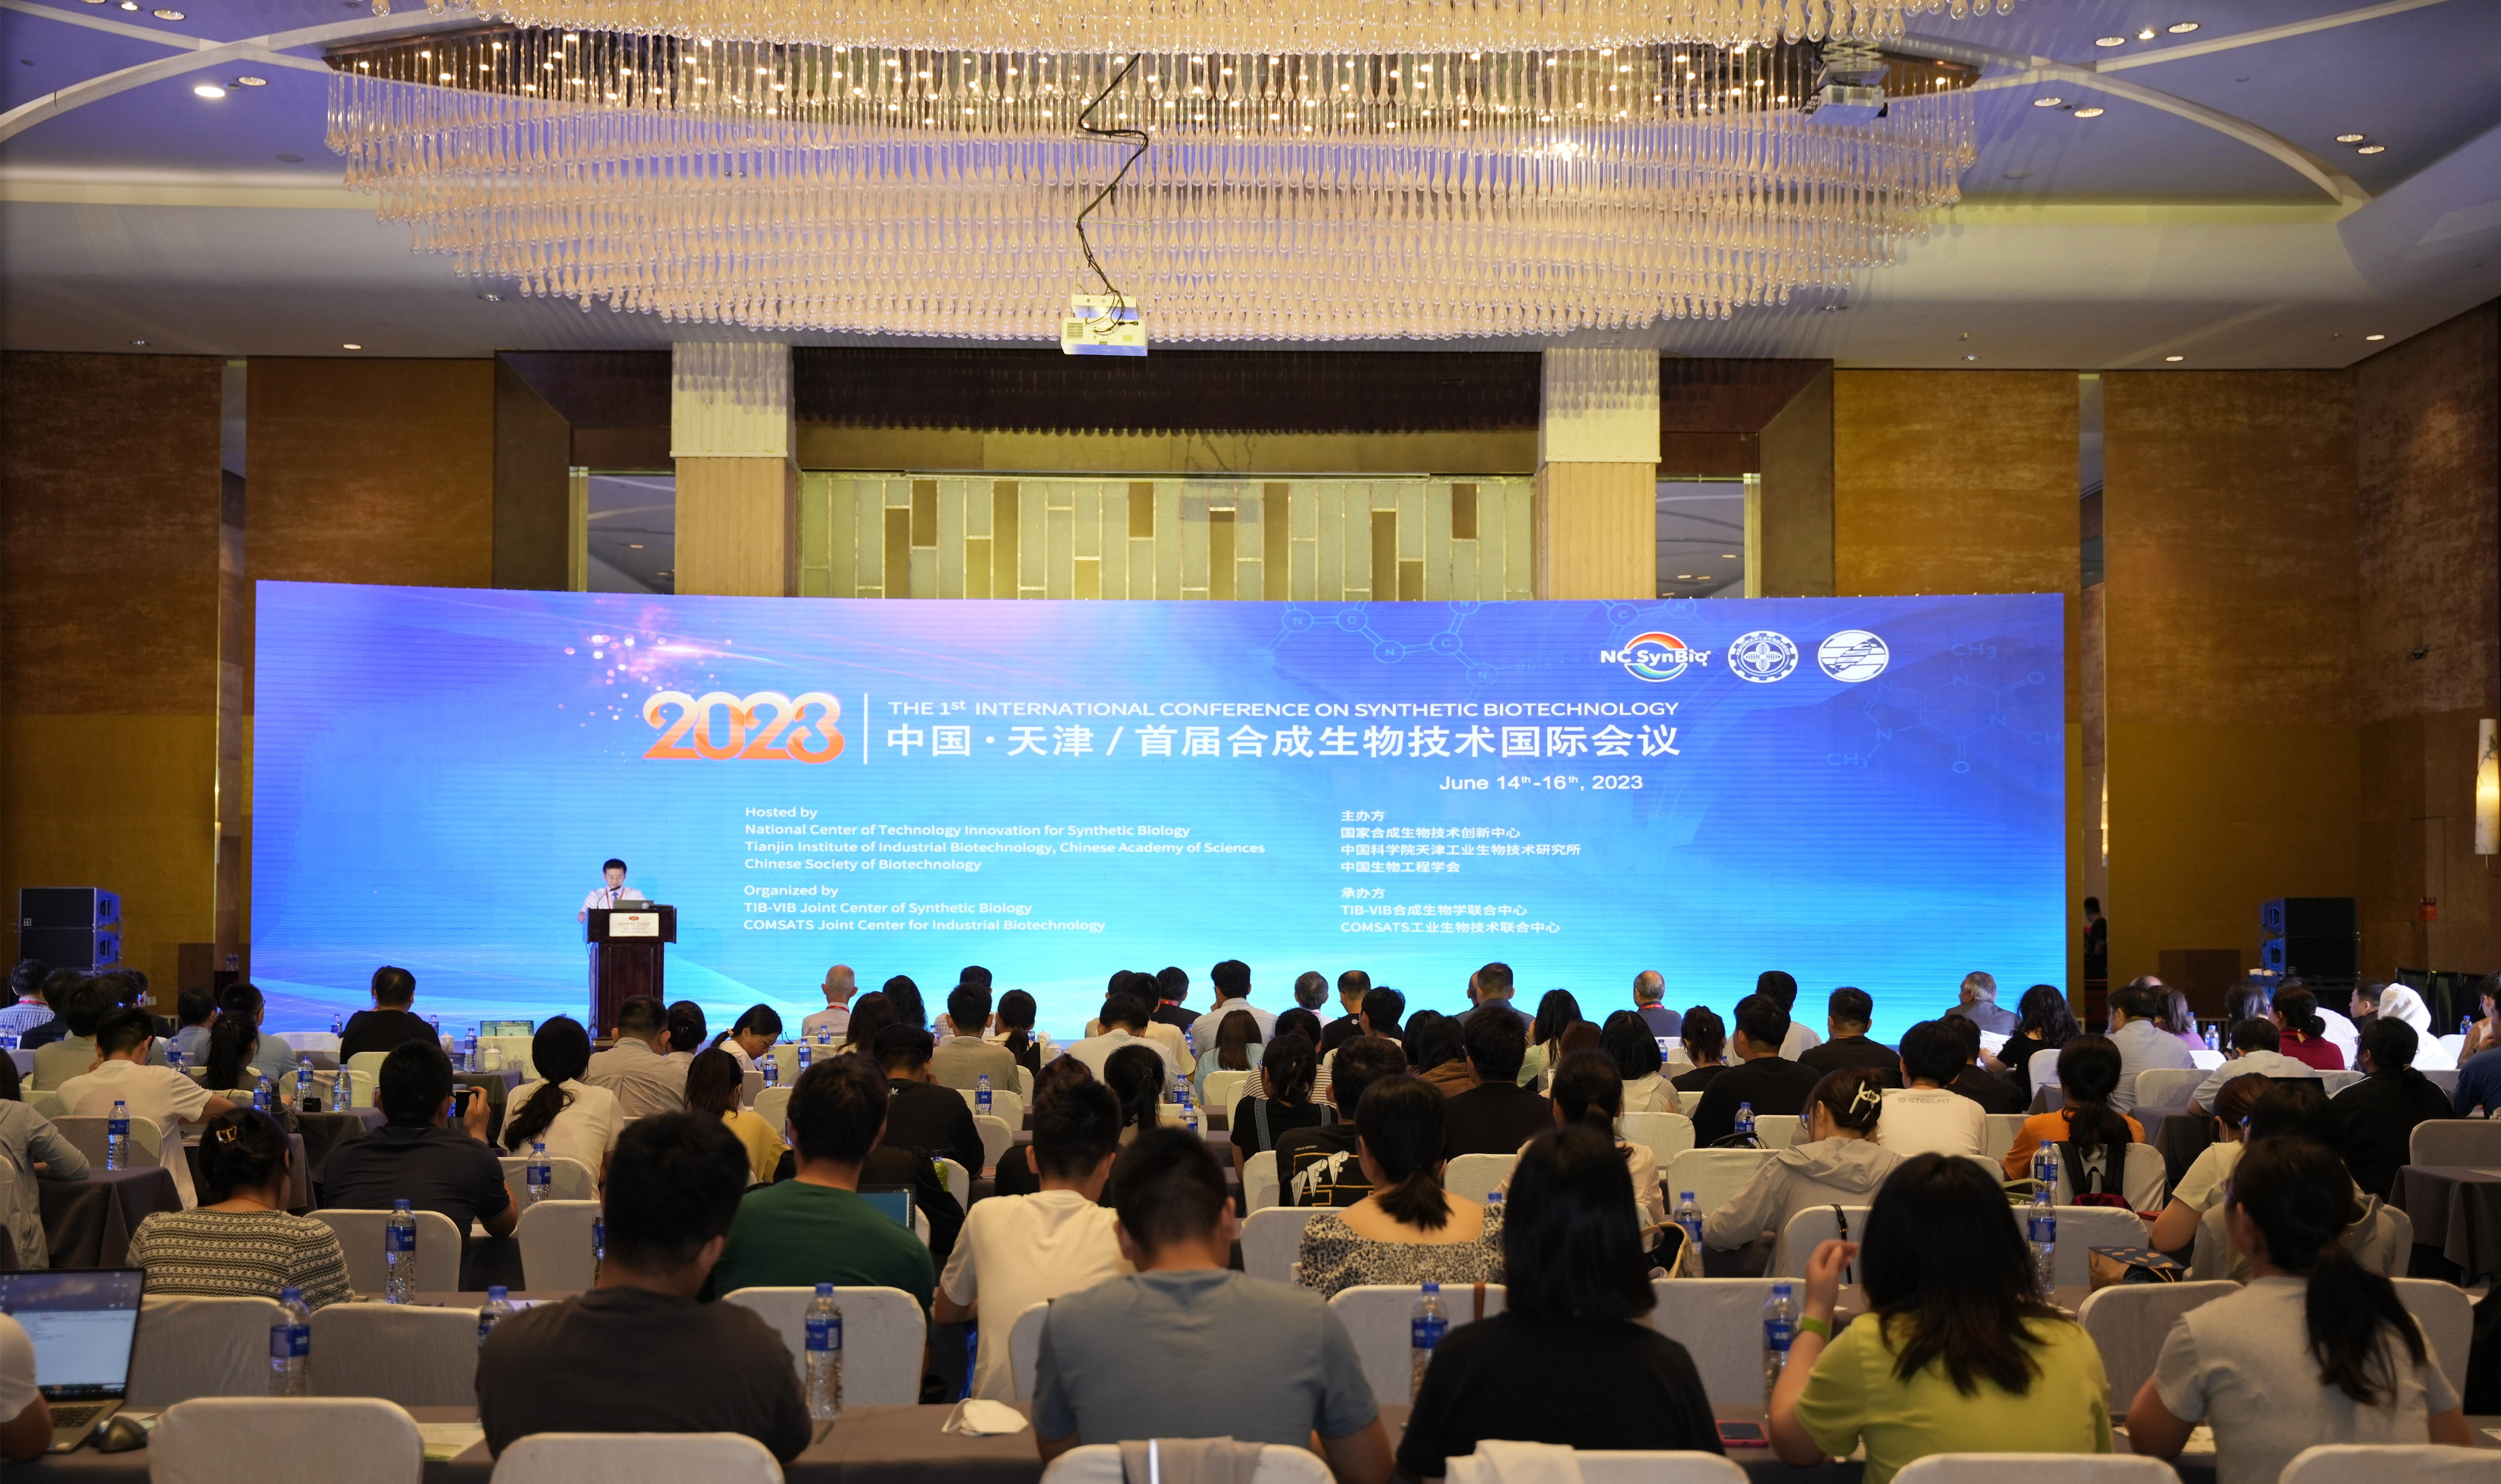 首届合成生物技术国际会议在天津举行